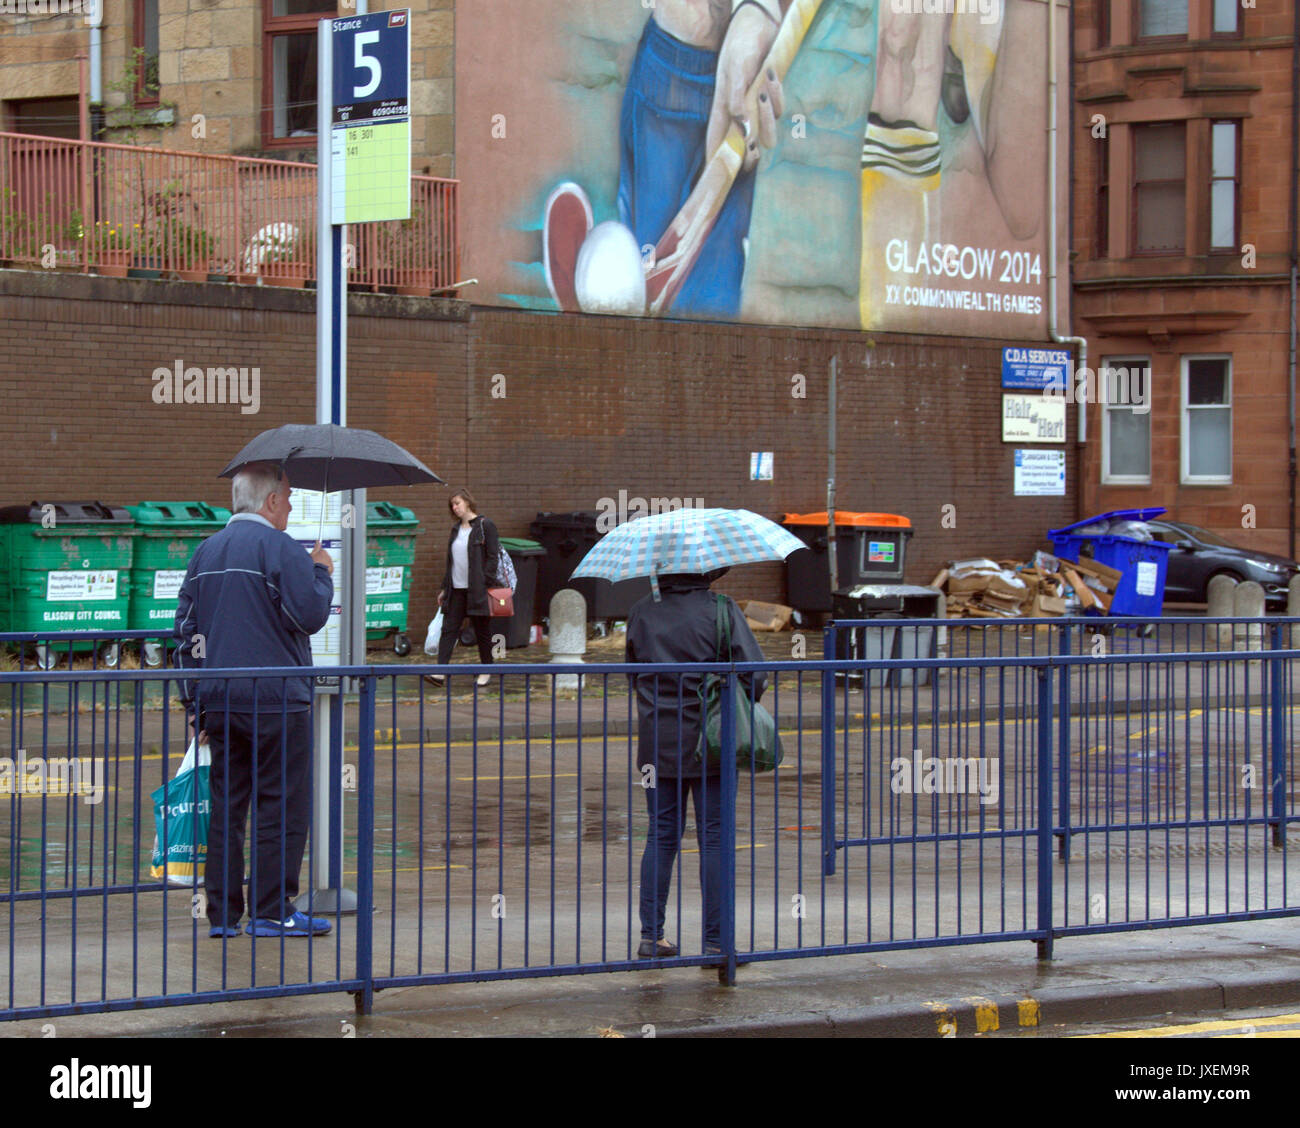 Glasgow, Schottland, Großbritannien. 16 Aug, 2017. Regen in Glasgows Partick bus station als Touristen entdecken Sie die Tatsache, dass es die regenreichste Stadt in Großbritannien. Gerard Fähre / alamy Nachrichten Stockfoto